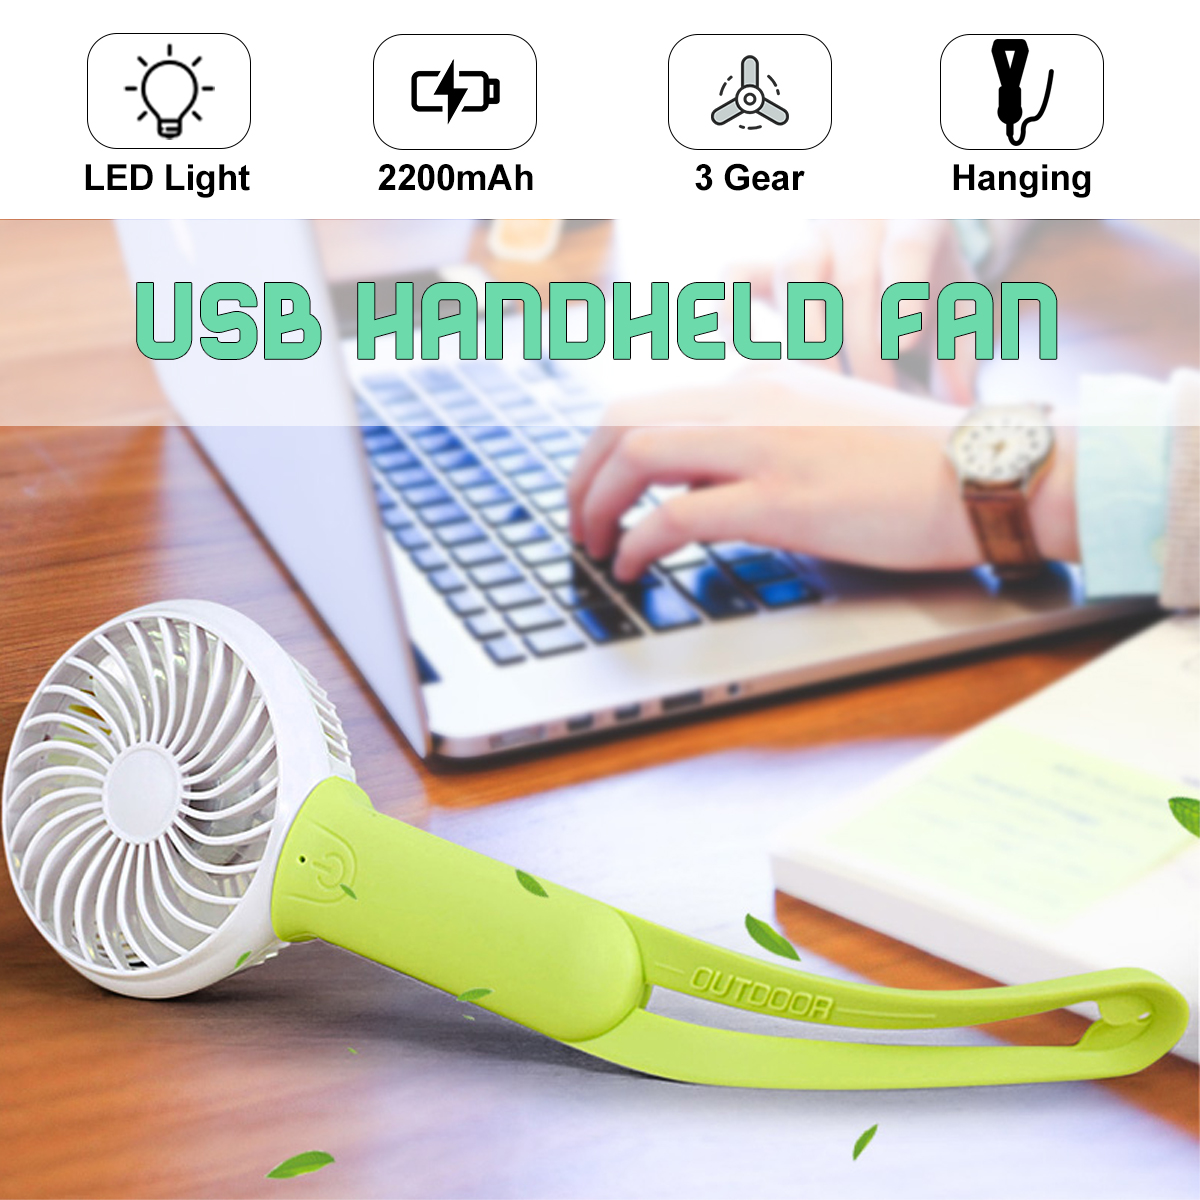 USB-Cooling-Fan-Portable-Handheld-Fan-3-Speed-Mini-Fan-LED-light-2200mAh-Battery-Hanging-Fan-1520360-2